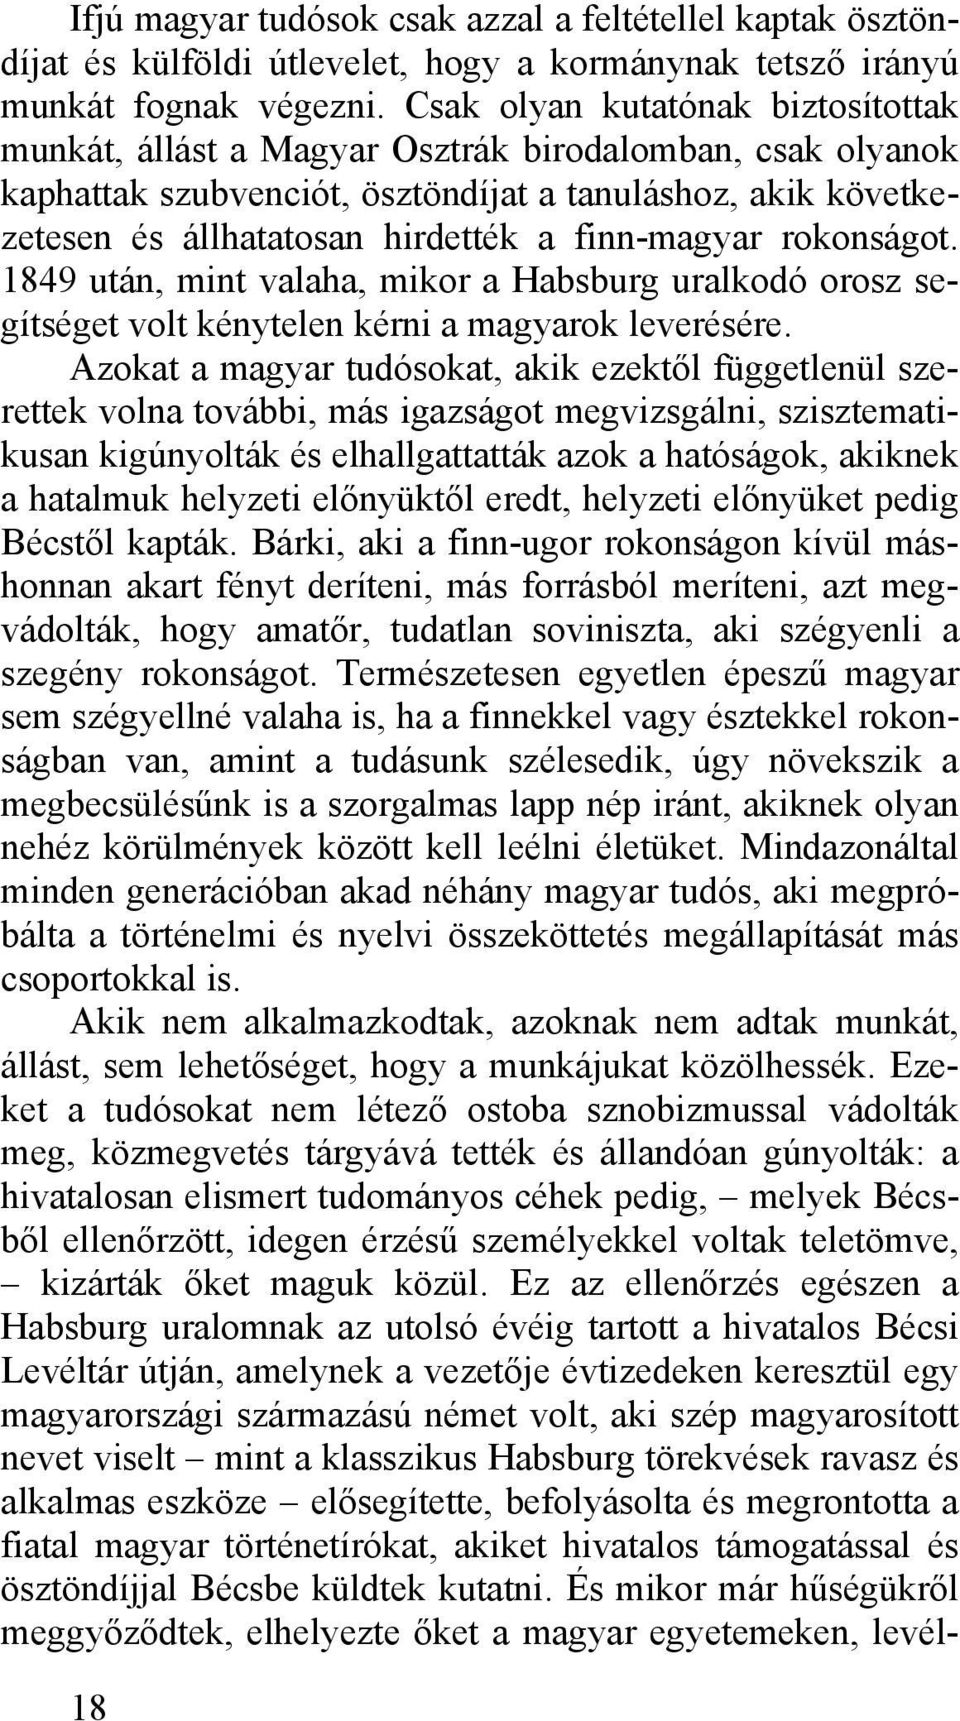 finn-magyar rokonságot. 1849 után, mint valaha, mikor a Habsburg uralkodó orosz segítséget volt kénytelen kérni a magyarok leverésére.